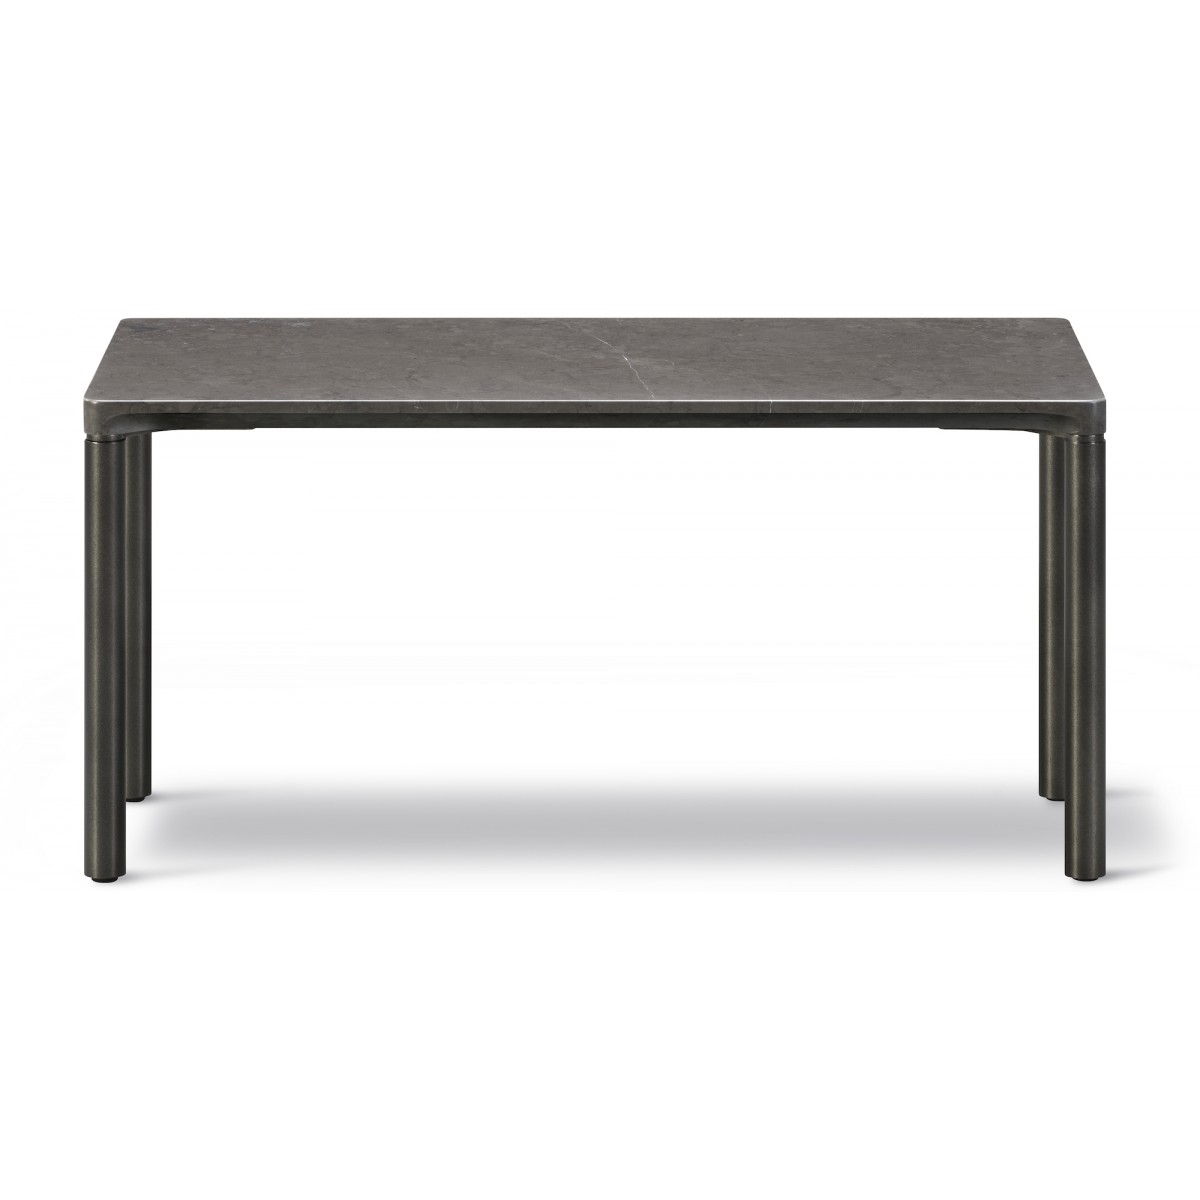 Piloti Stone table 6760 – 75 x 39 cm